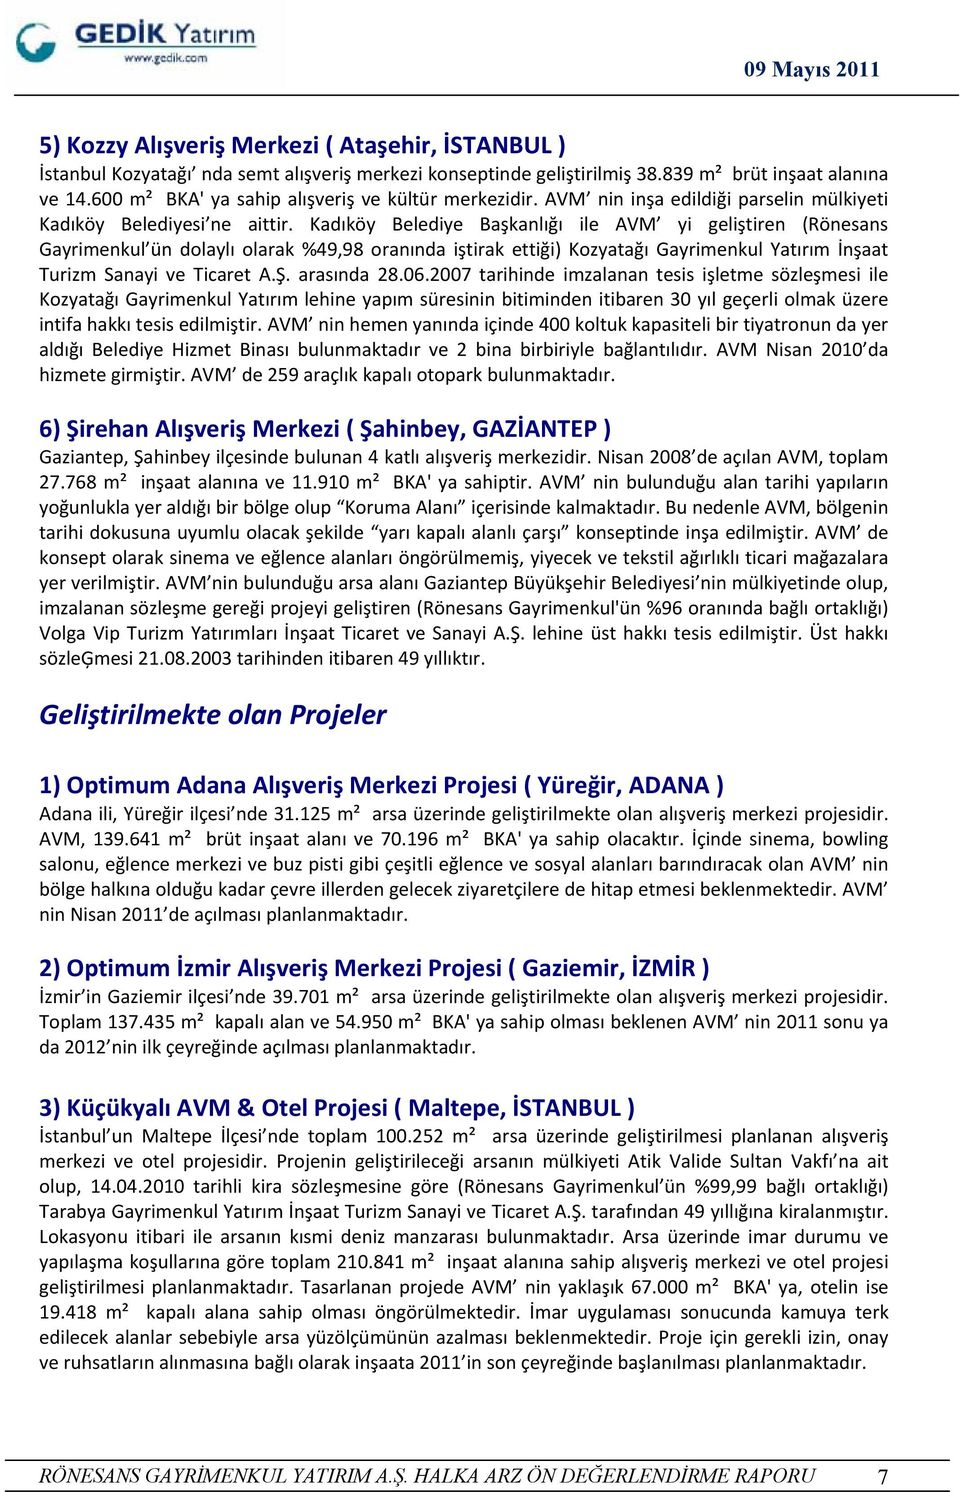 Kadıköy Belediye Başkanlığı ile AVM yi geliştiren (Rönesans Gayrimenkul ün dolaylı olarak %49,98 oranında iştirak ettiği) Kozyatağı Gayrimenkul Yatırım İnşaat Turizm Sanayi ve Ticaret A.Ş.